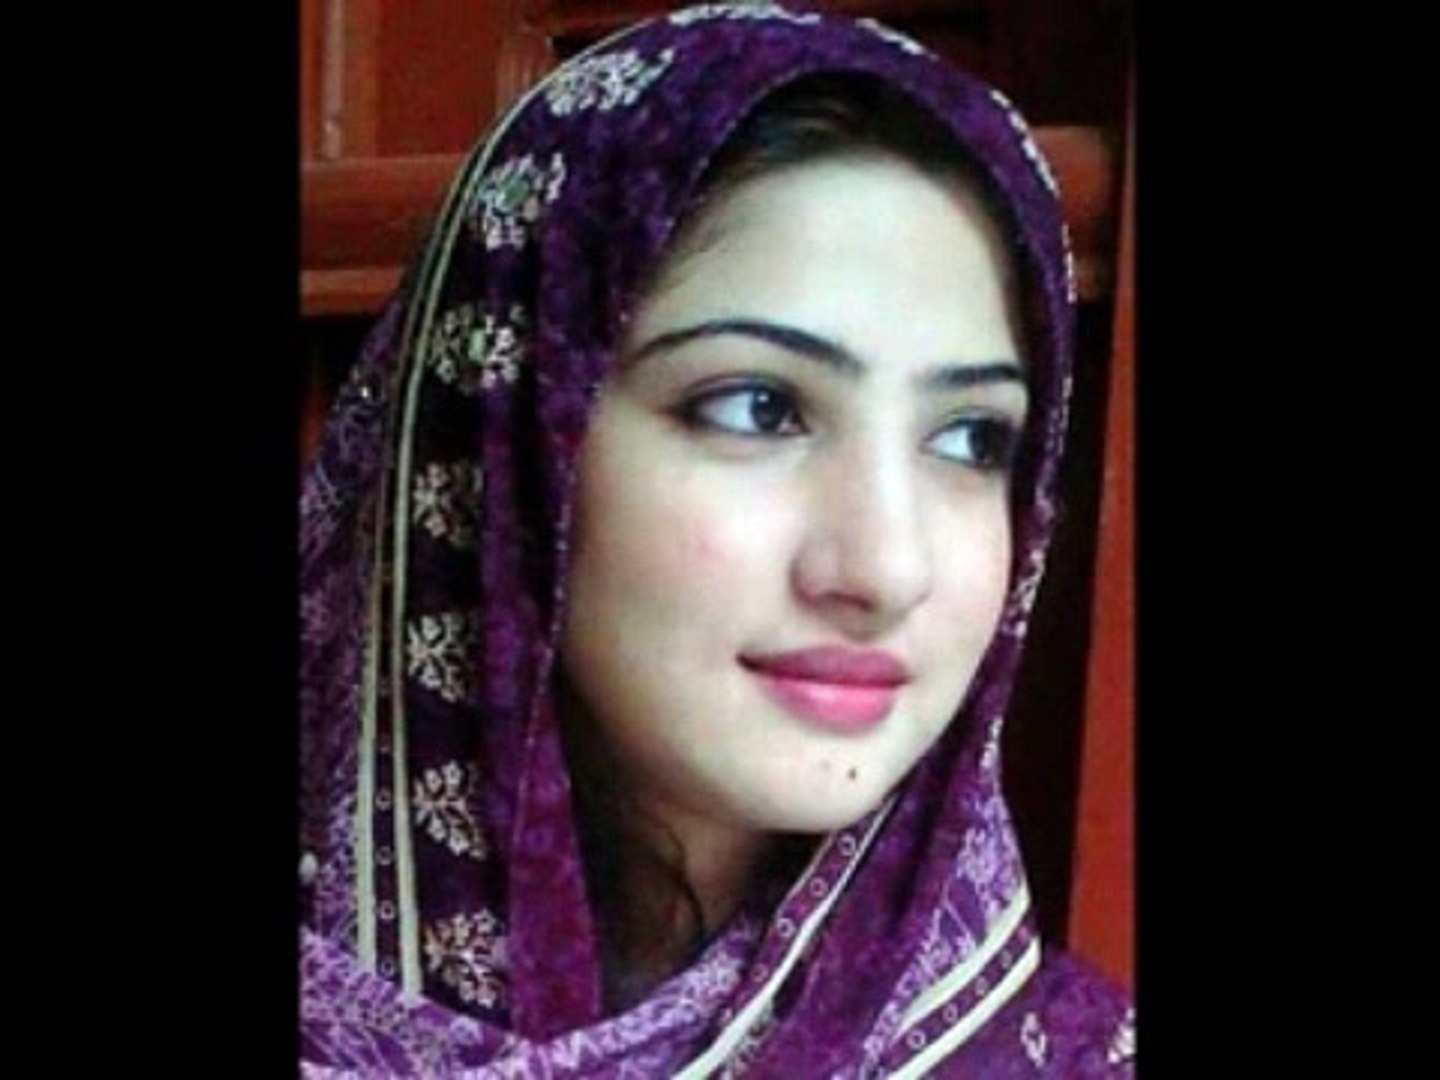 Pakistani Beautiful Girls Pictures